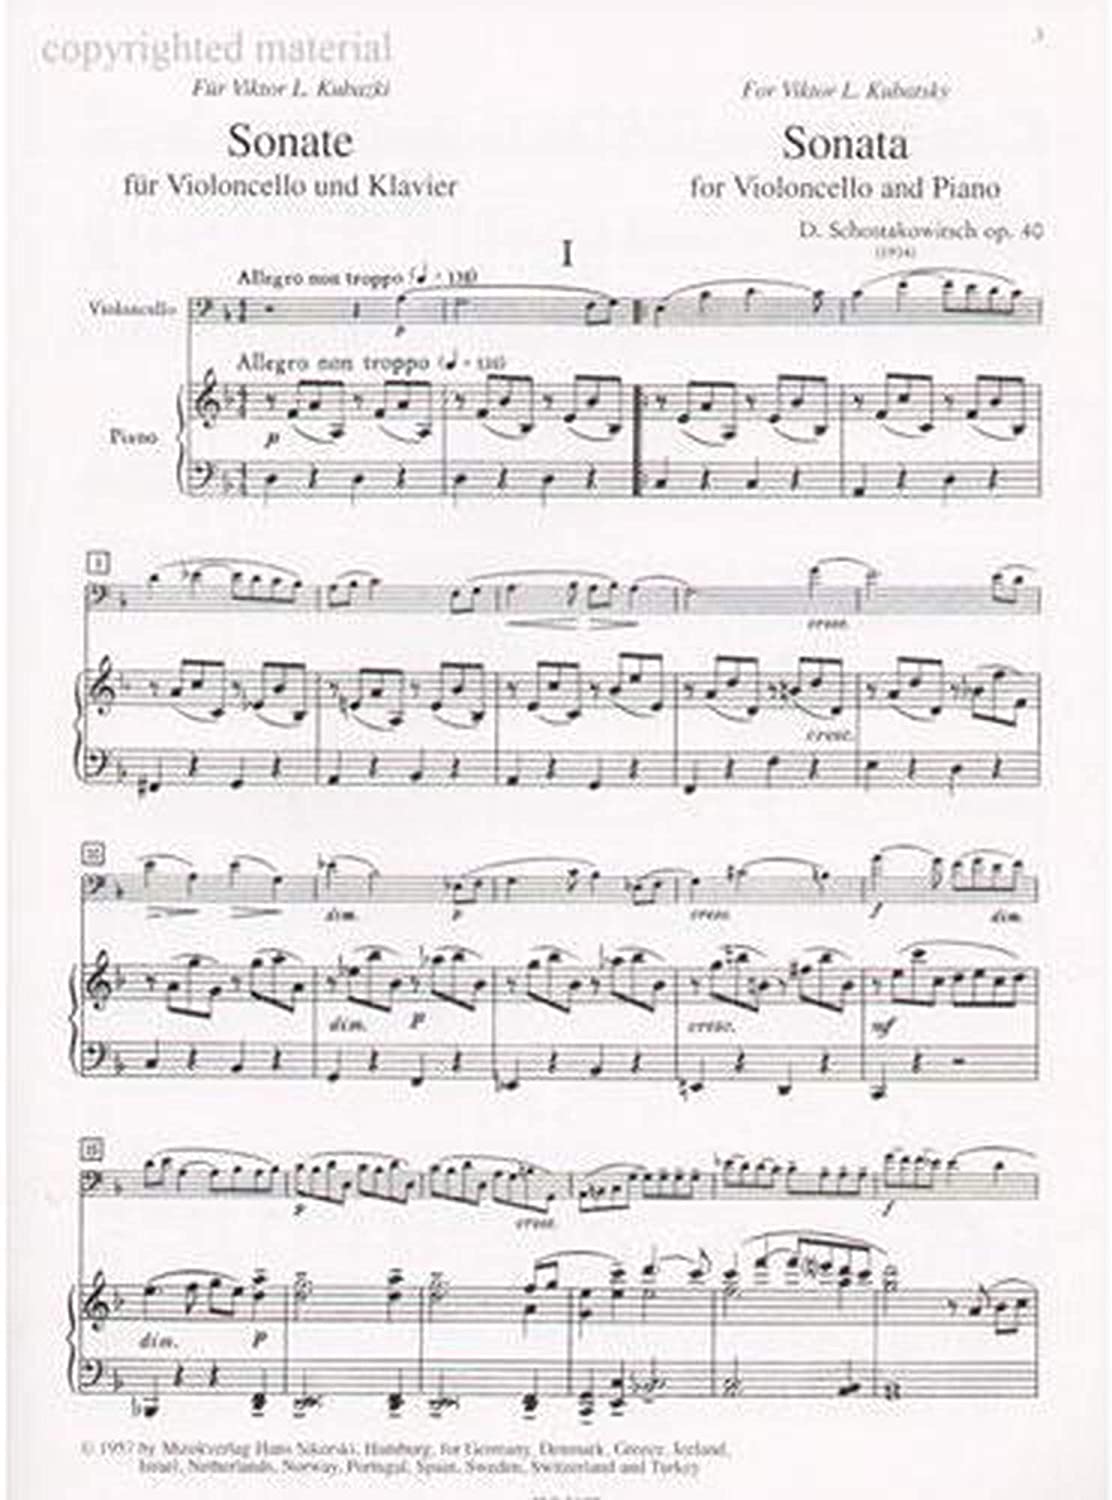 Shostakovich: Sonata for Cello and Piano, Op. 40